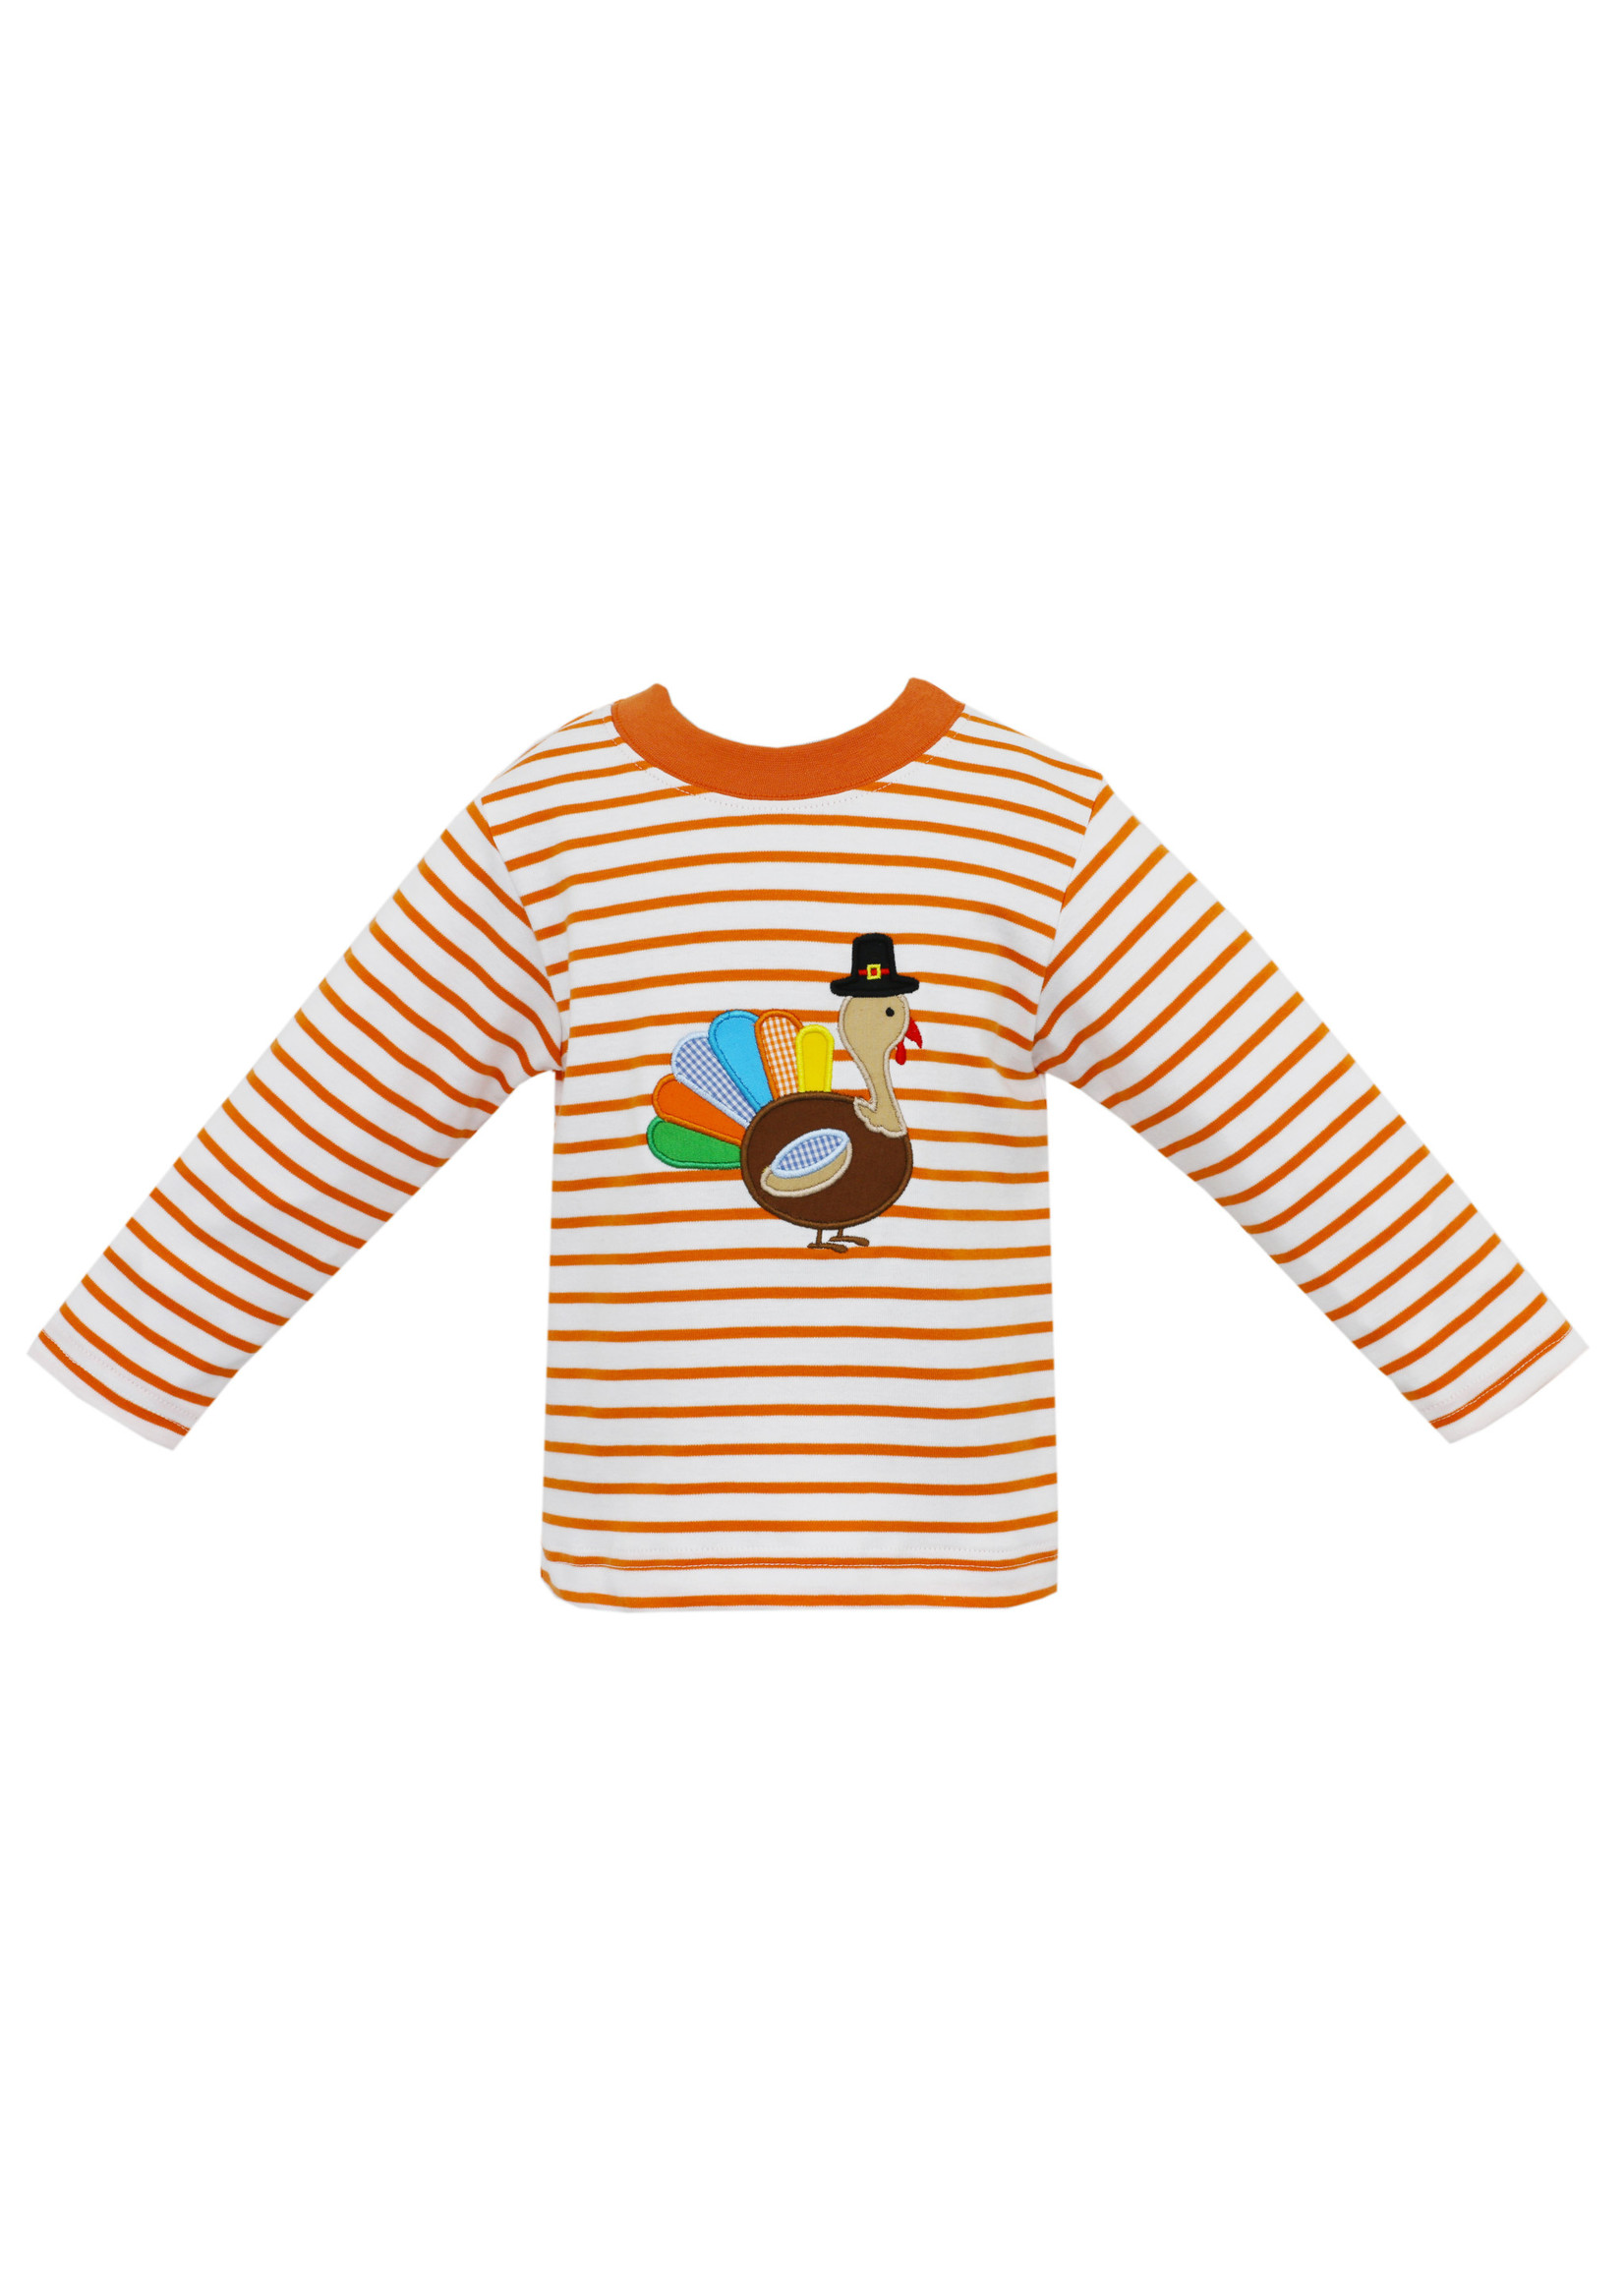 Claire & Charlie Orange Stripe Turkey Shirt